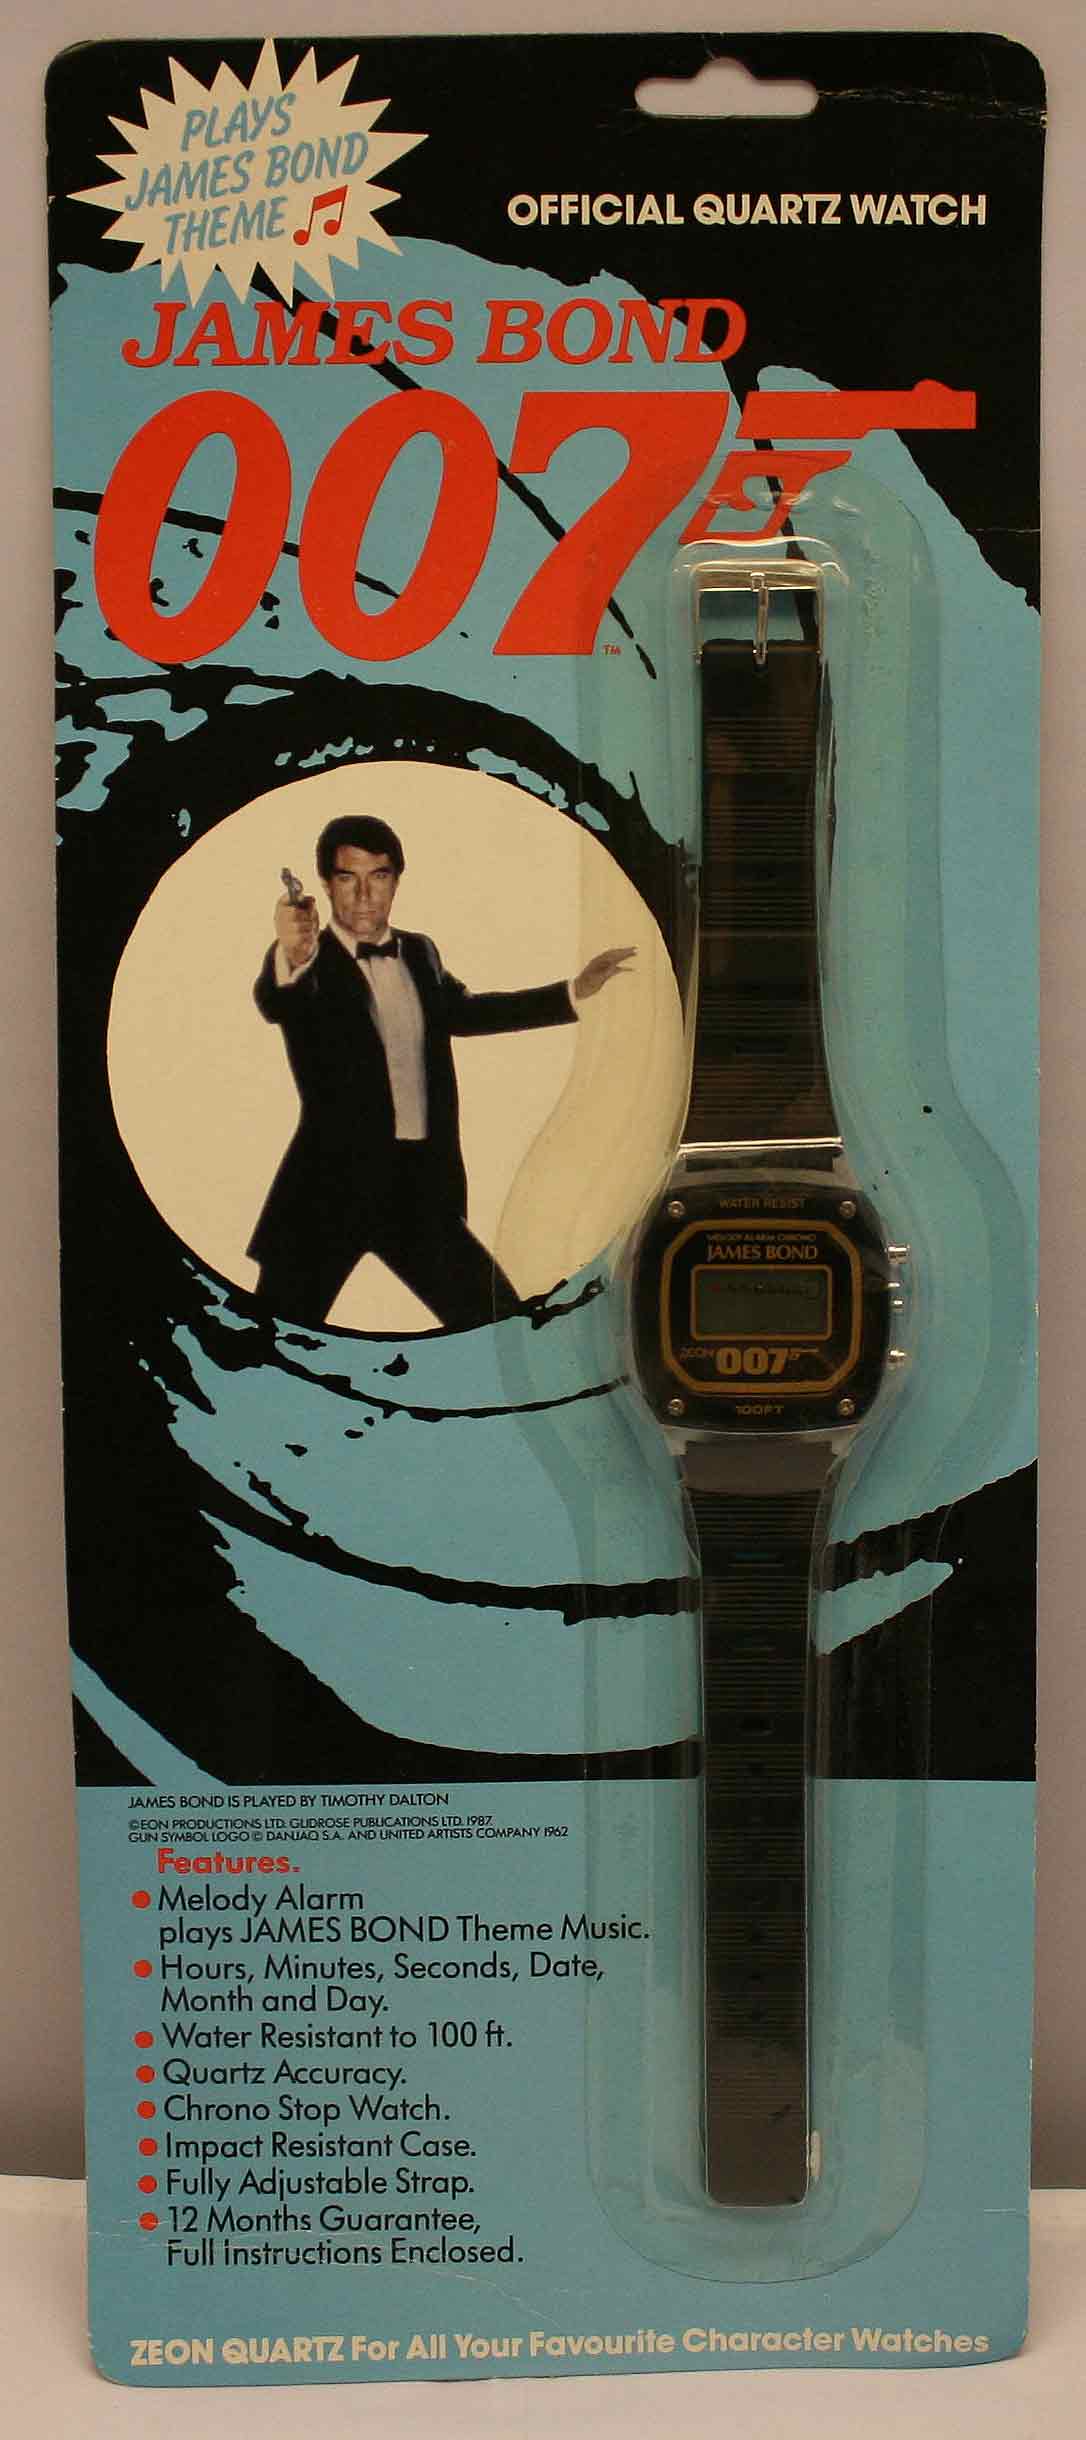 007 digital watch